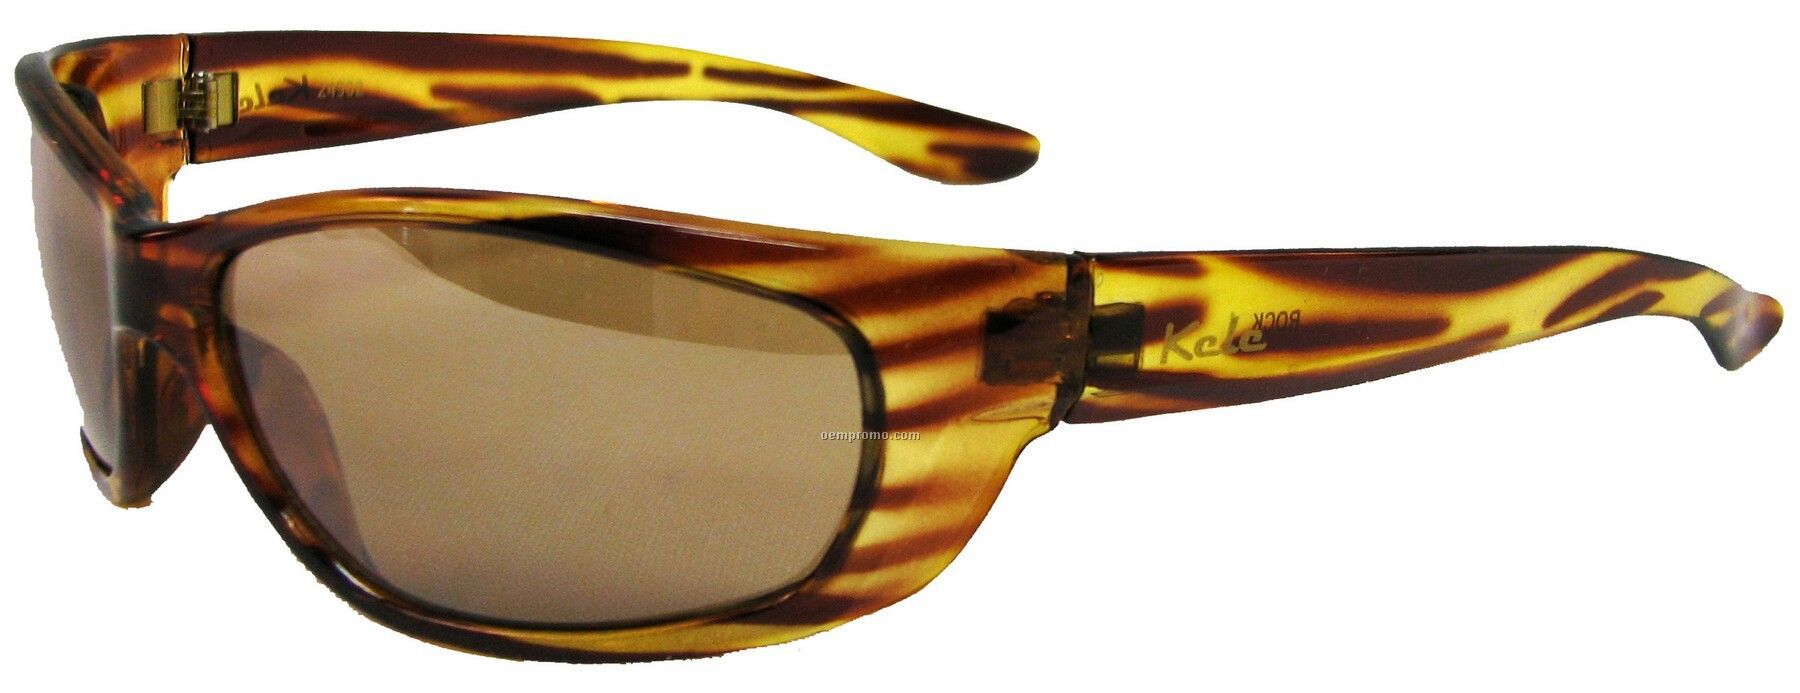 Rock Sunglasses - Amber Lens W/Tortoise Frame